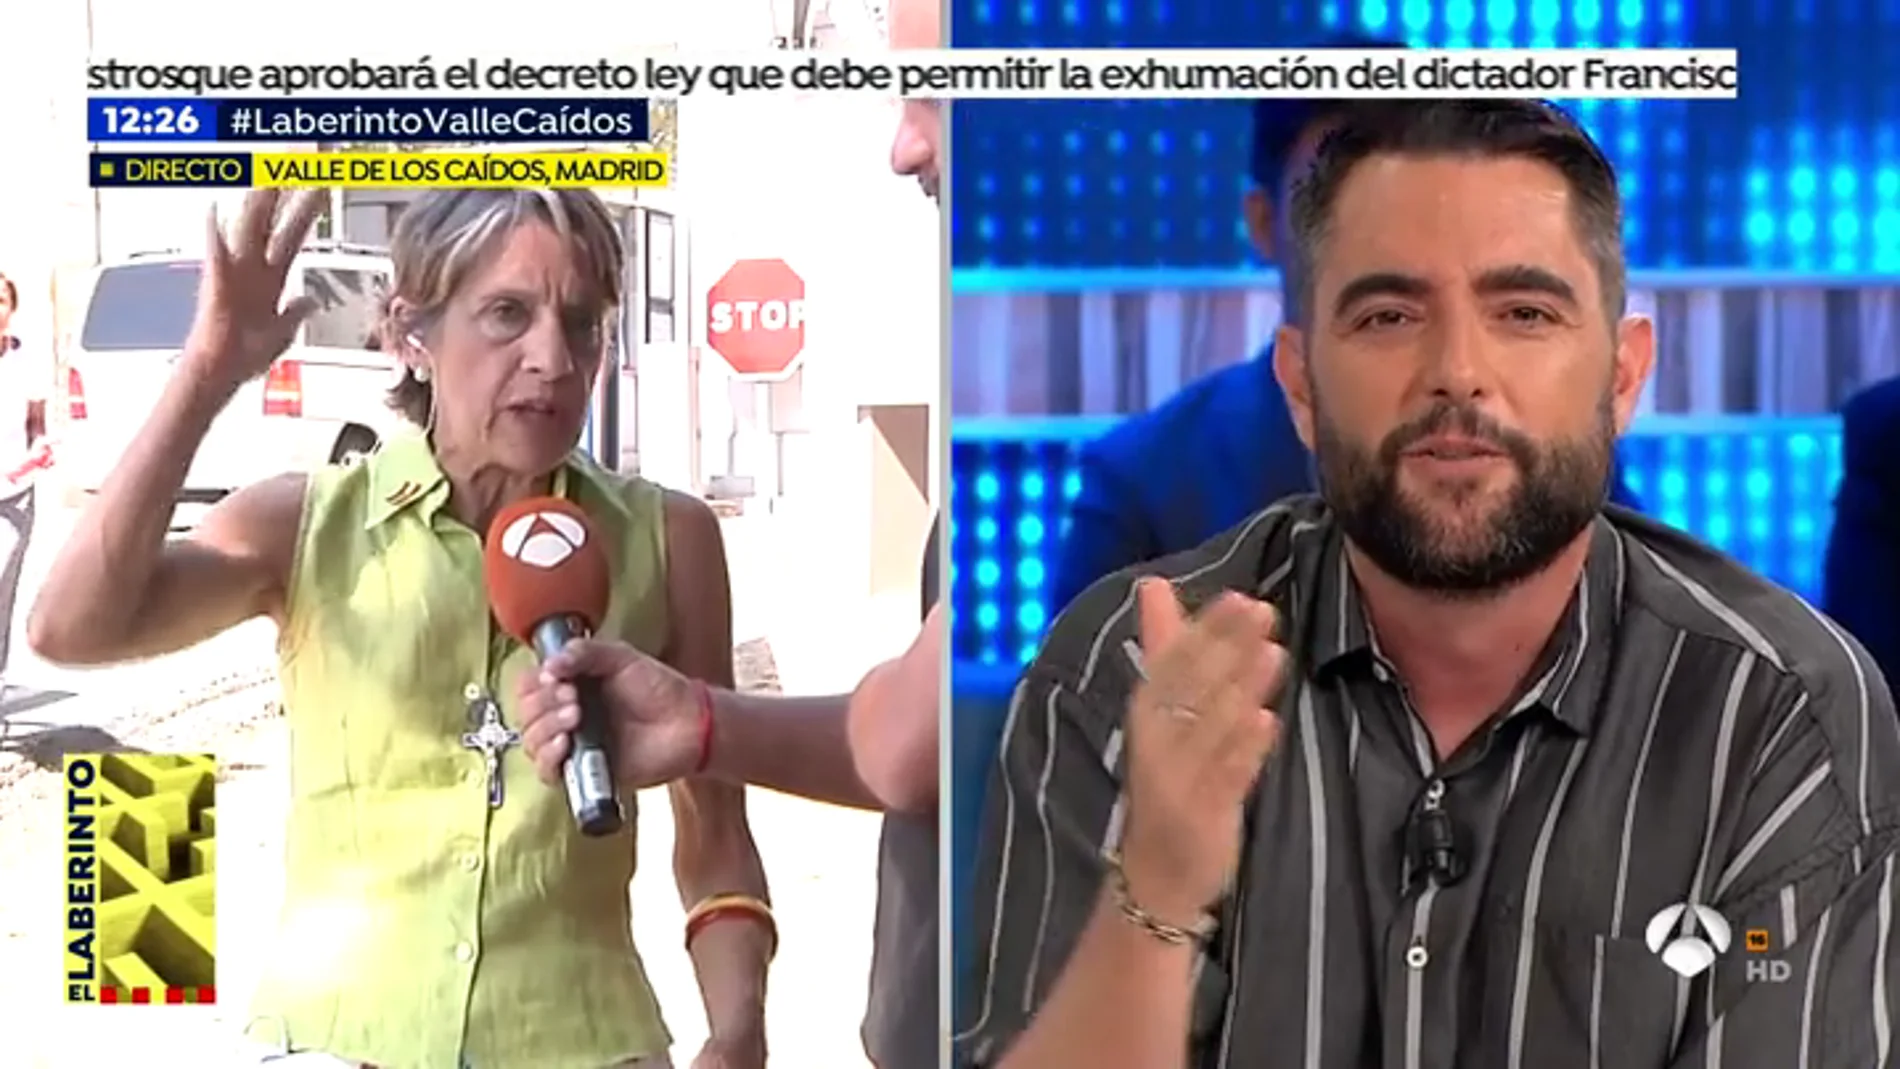 Dani Mateo y Pilar Gutiérrez, 'La mujer más franquista de España' se enzarzan en una discusión: "Andalucía lleva cuarenta años en una dictadura"